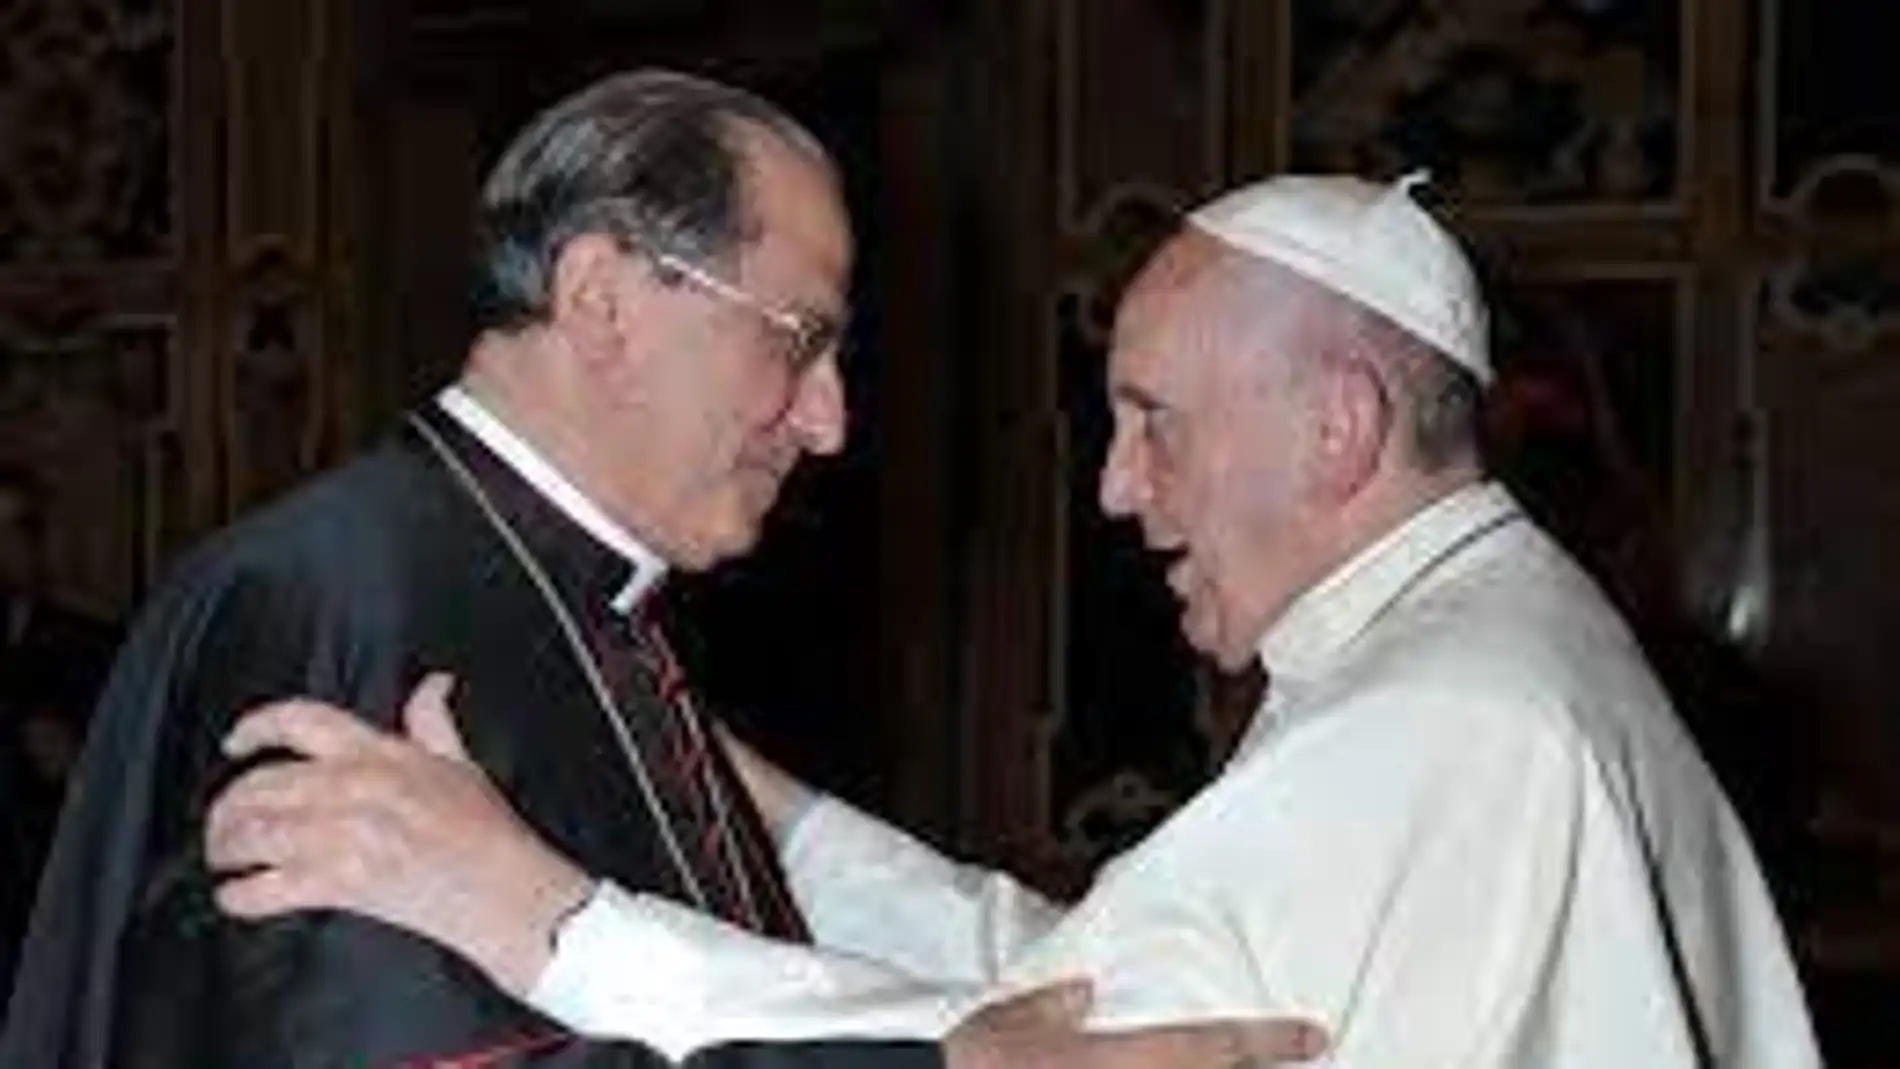 El arzobispo de Mérida-Badajoz asistirá desde el lunes a la 'visita ad limina' al Vaticano